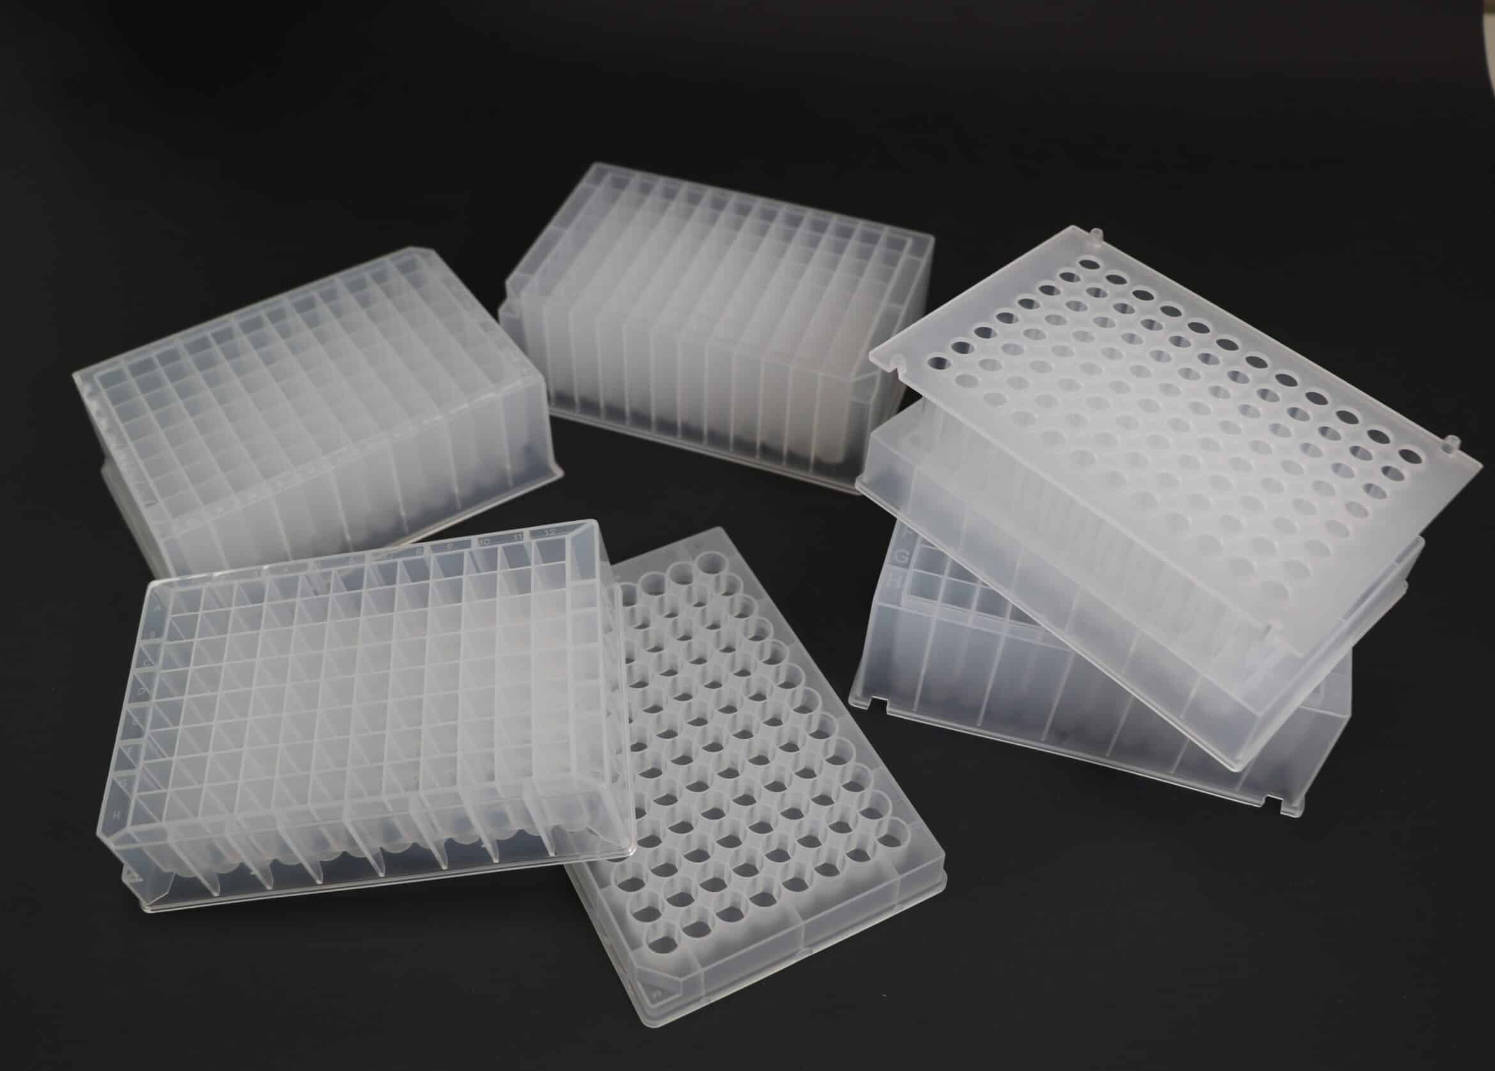 cum să vă sterilizați plăcile de puțuri adânci în laborator?